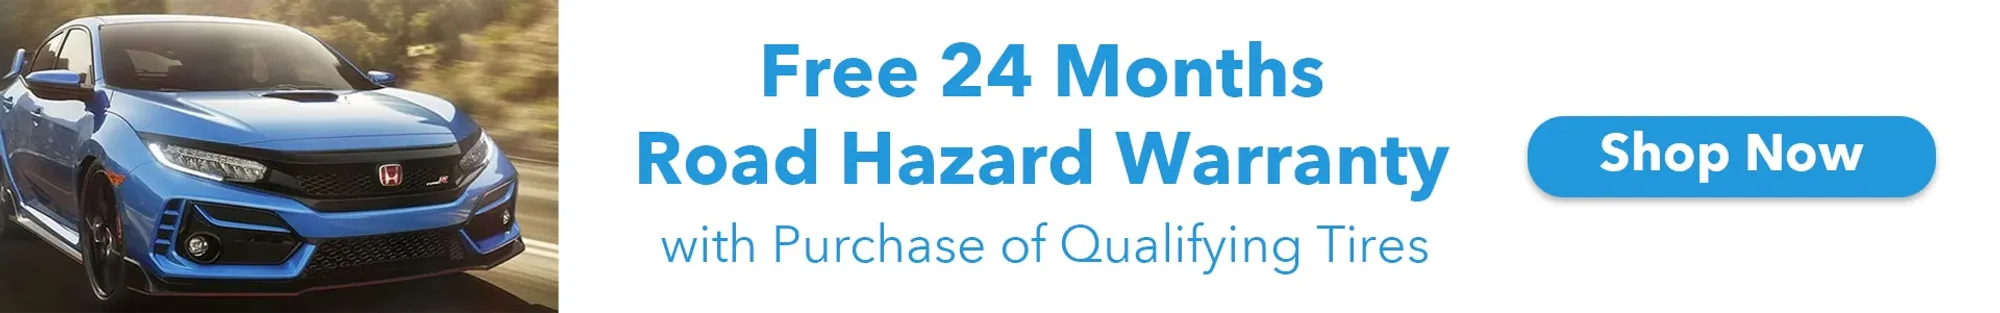 Free 24 Months Road Hazard Warranty